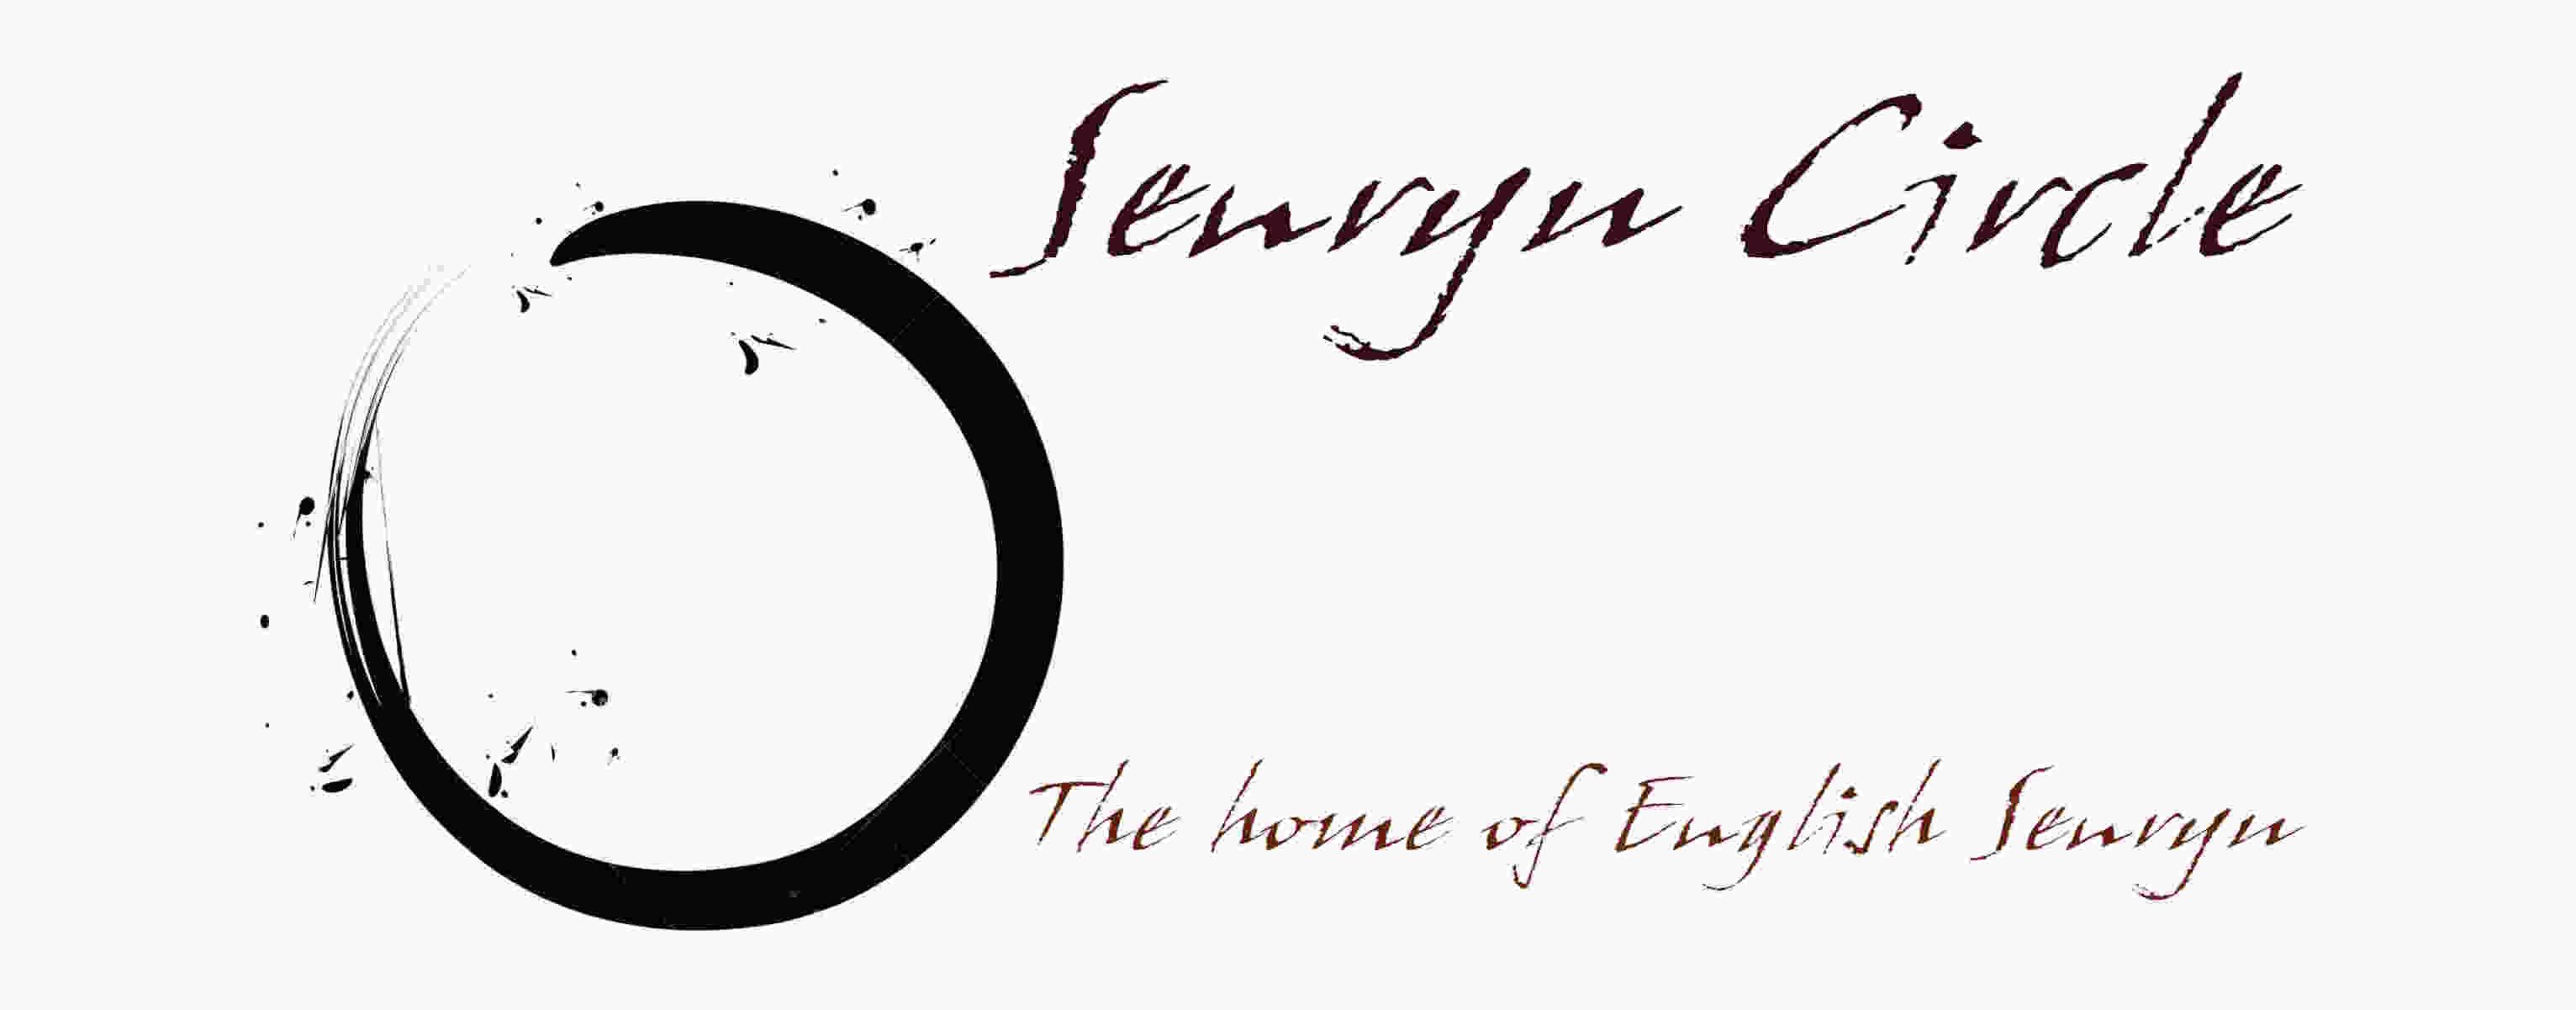 Senryu Circle